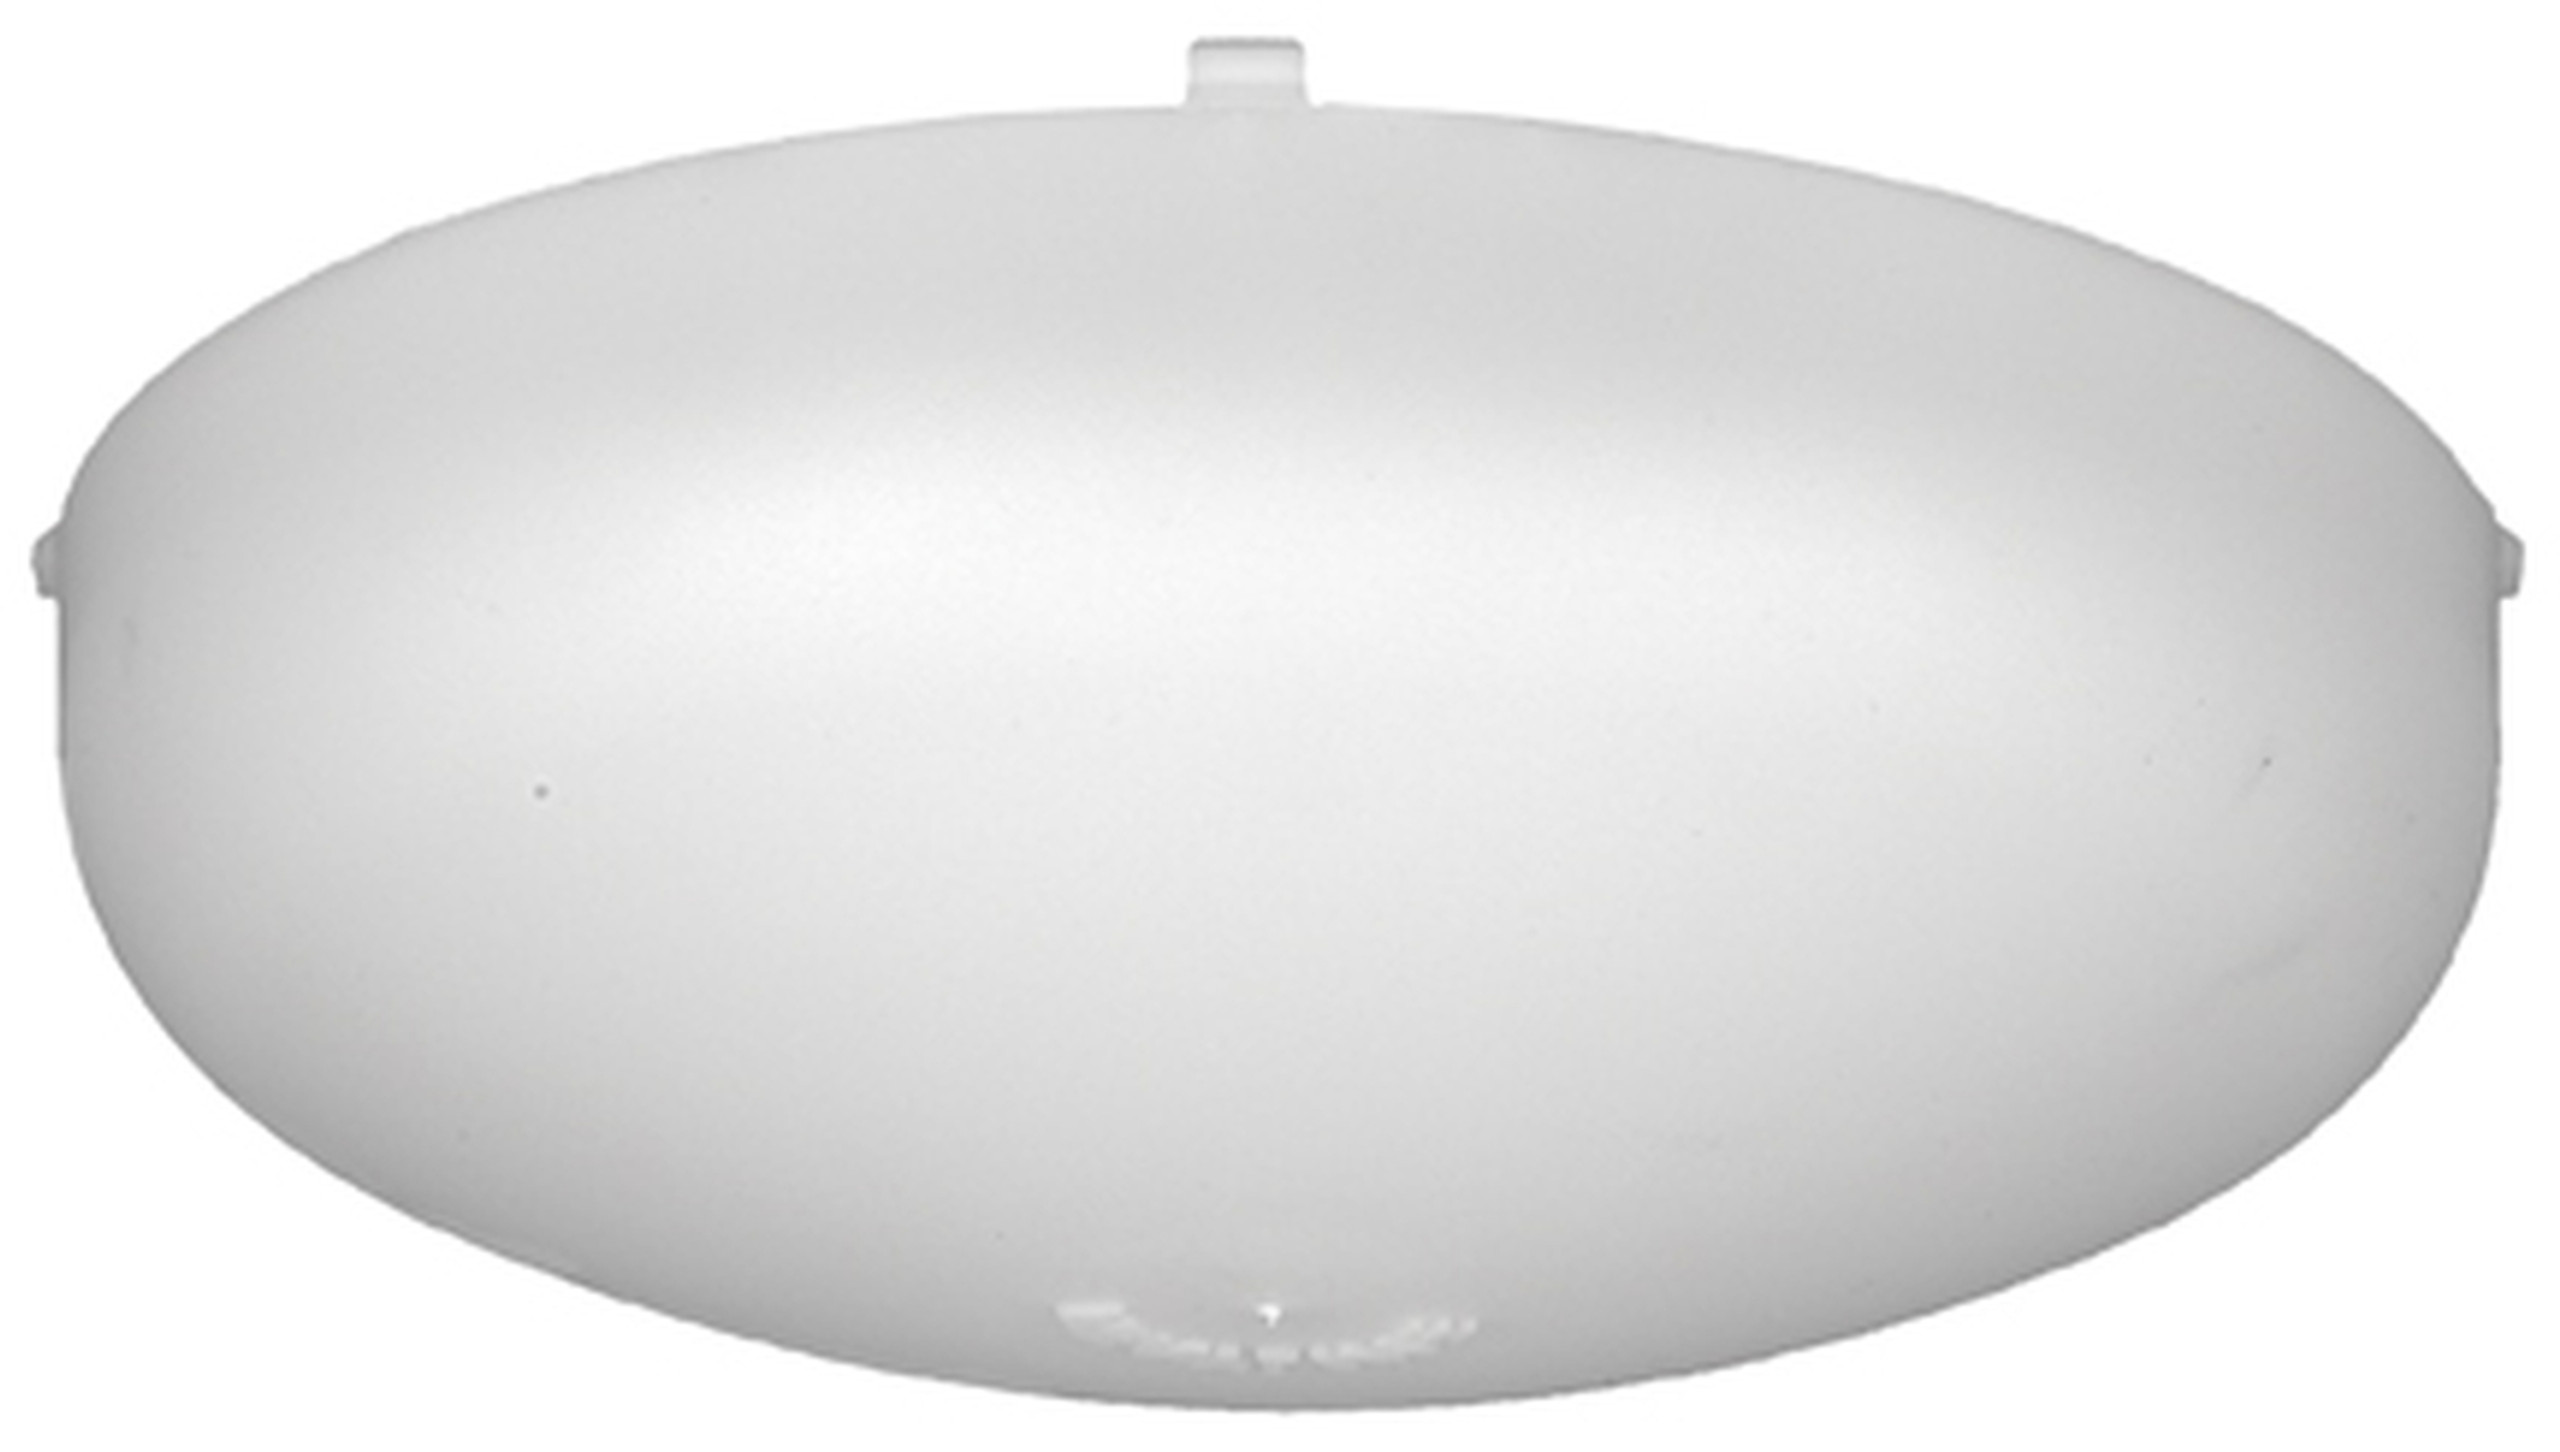 Ventline Bathroom Ceiling Exhaust Fan Light Lens - H & S Mobile Home ...